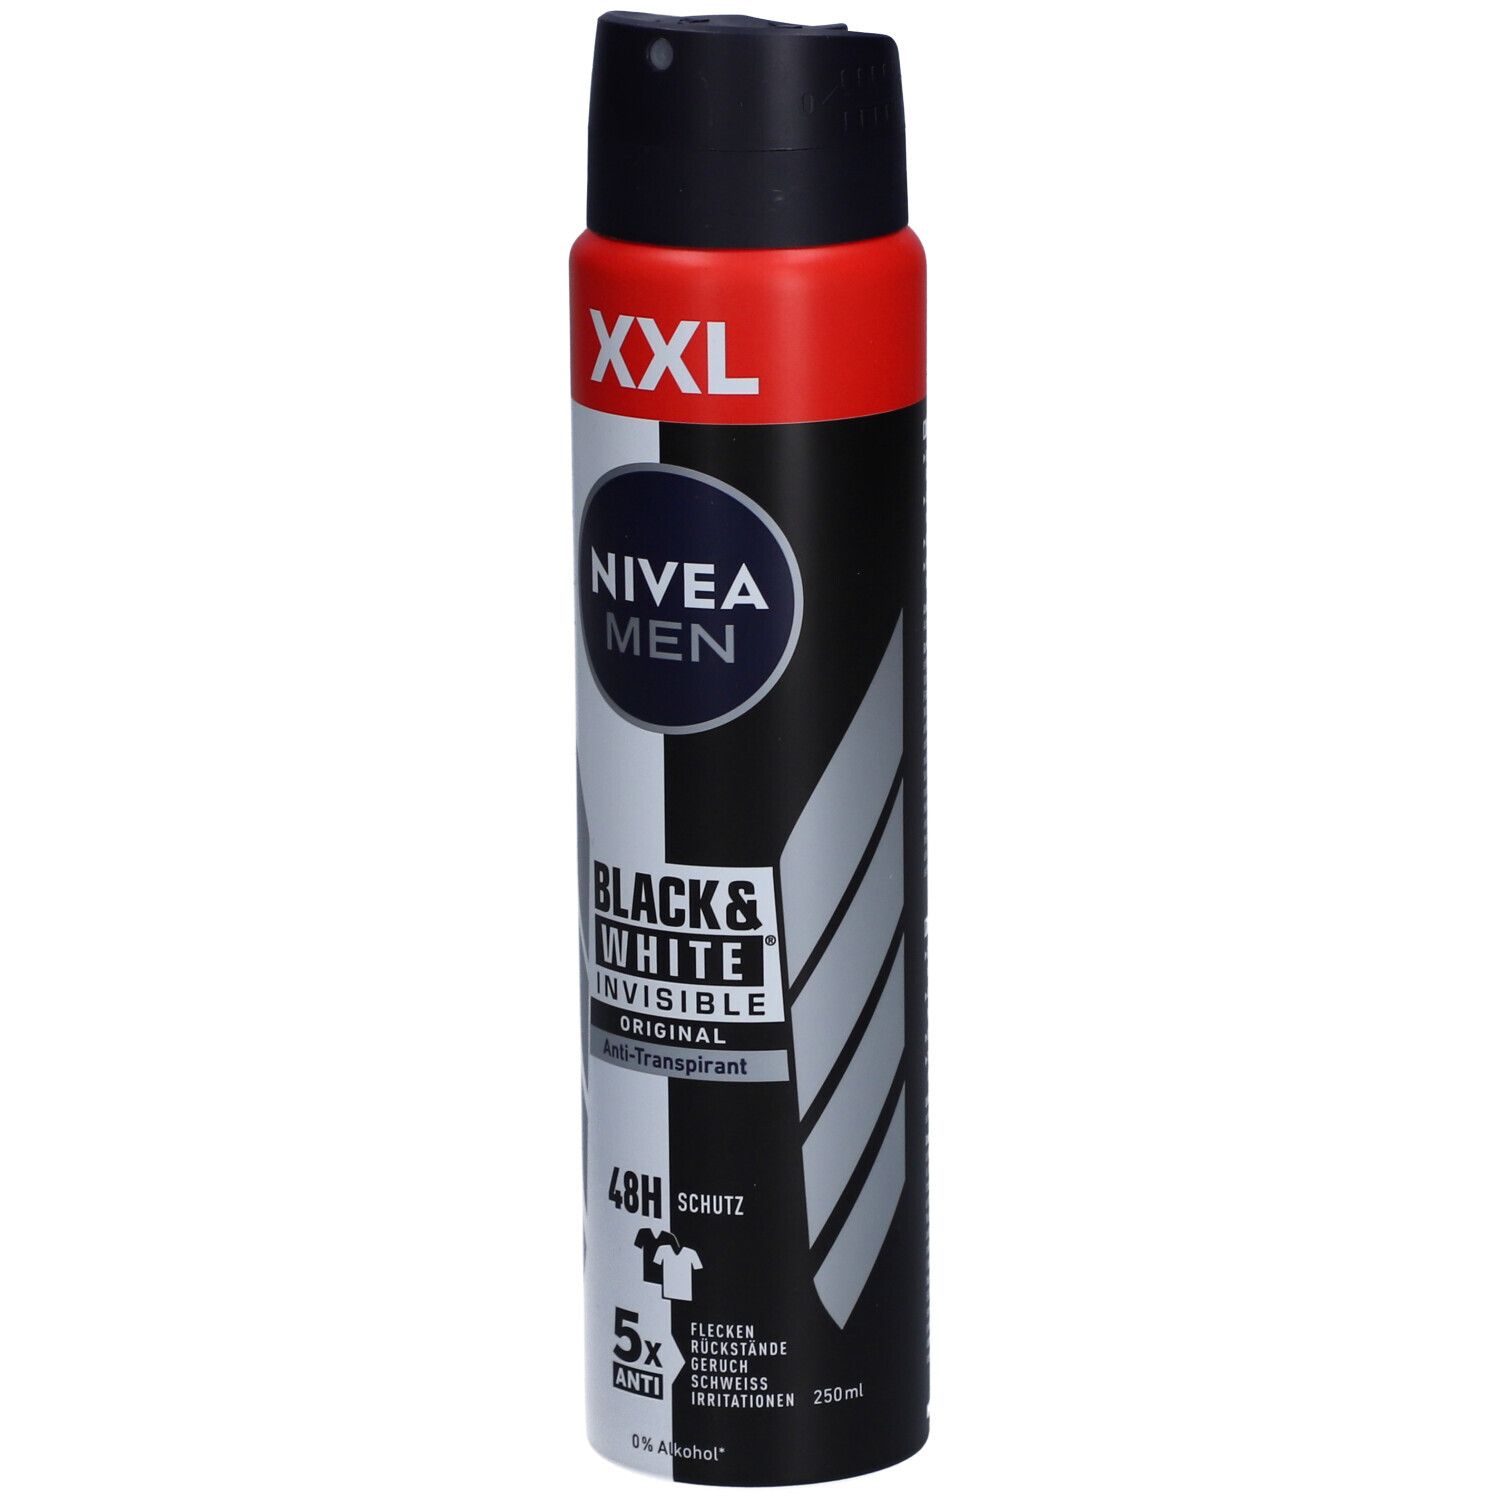 NIVEA MEN Invisible Black & White Deodorant